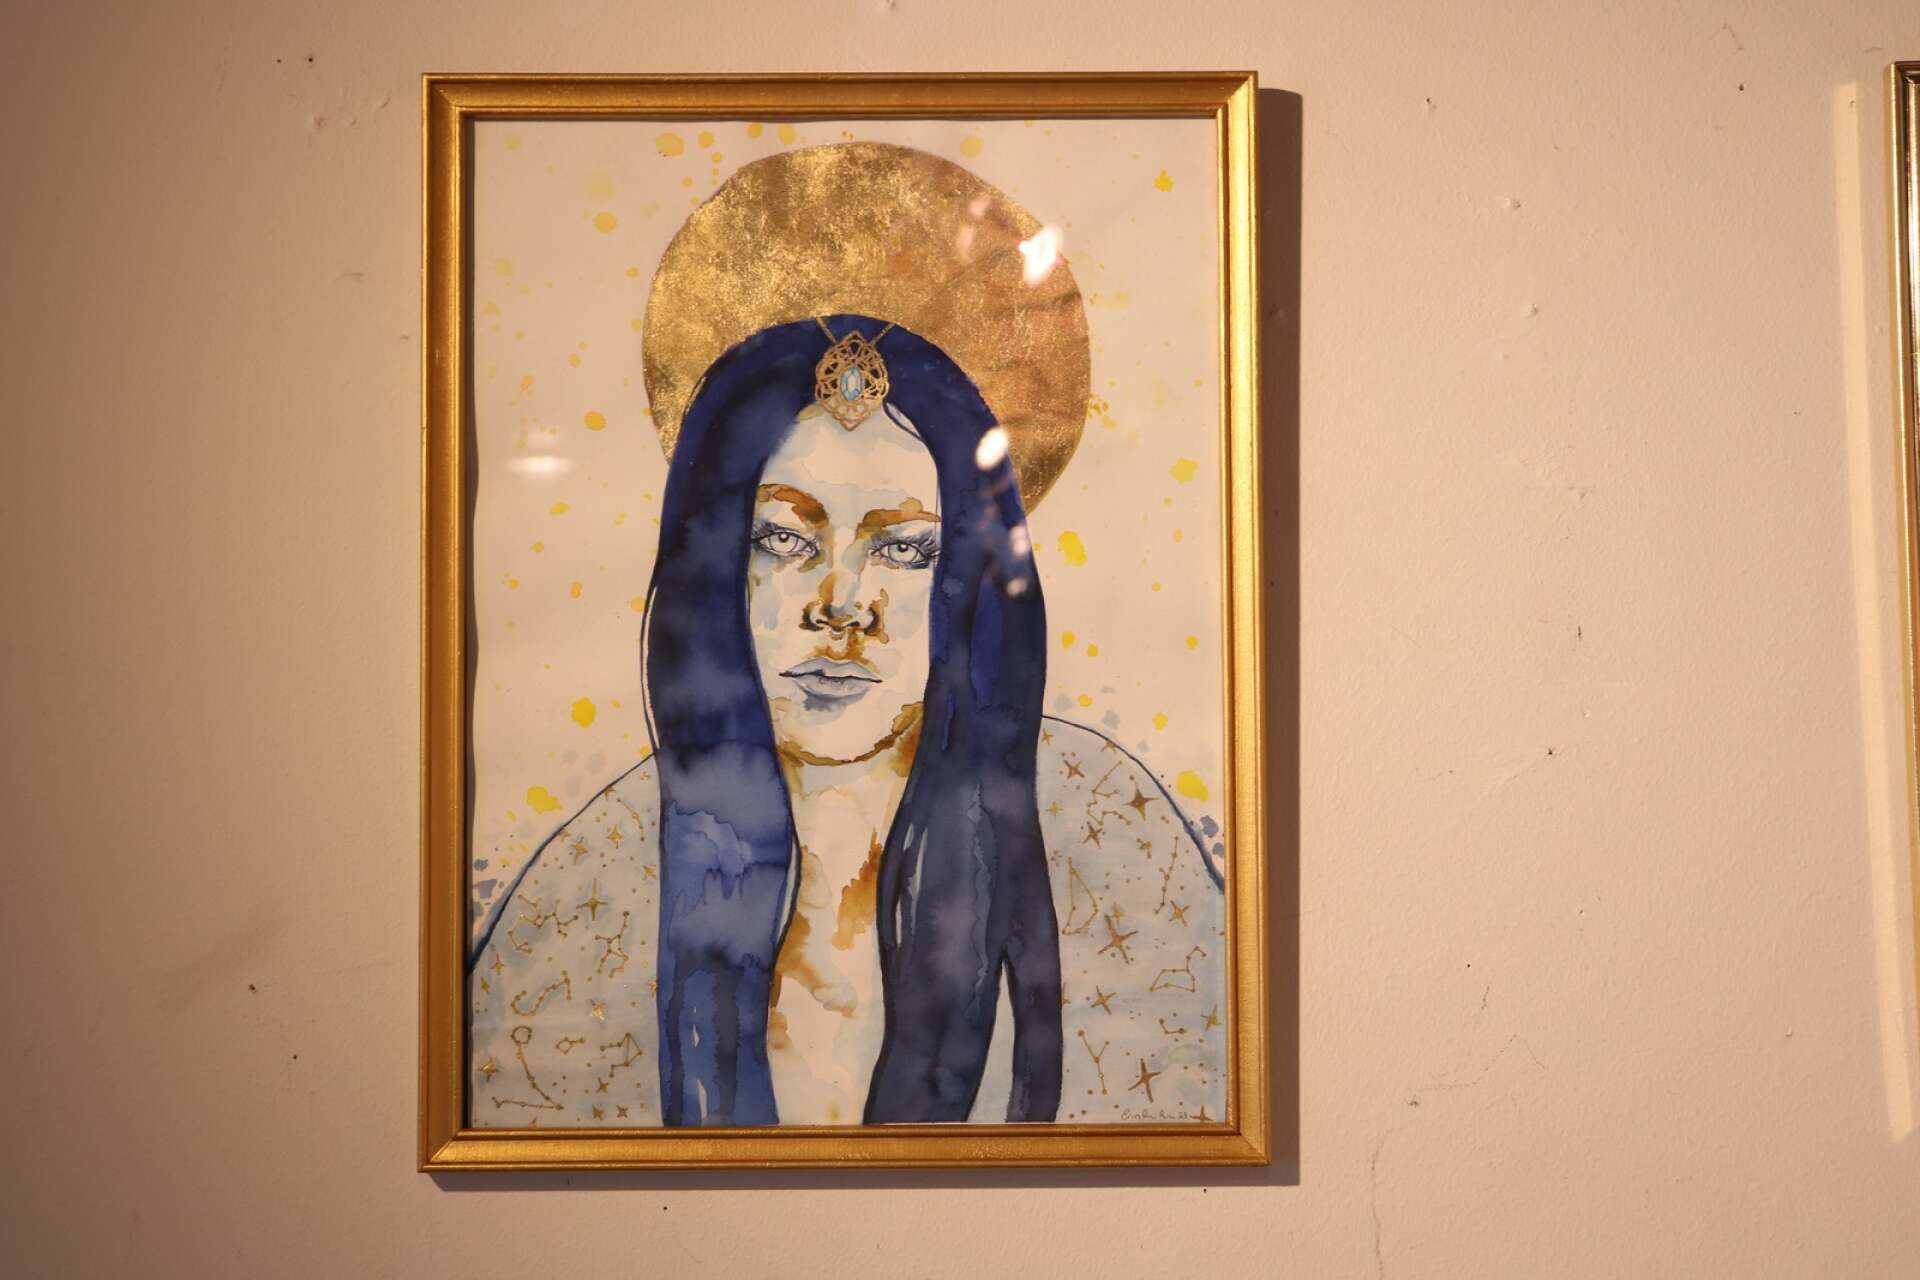 Erin arbetade med bladguld när hon målade ett porträtt av sig själv. 